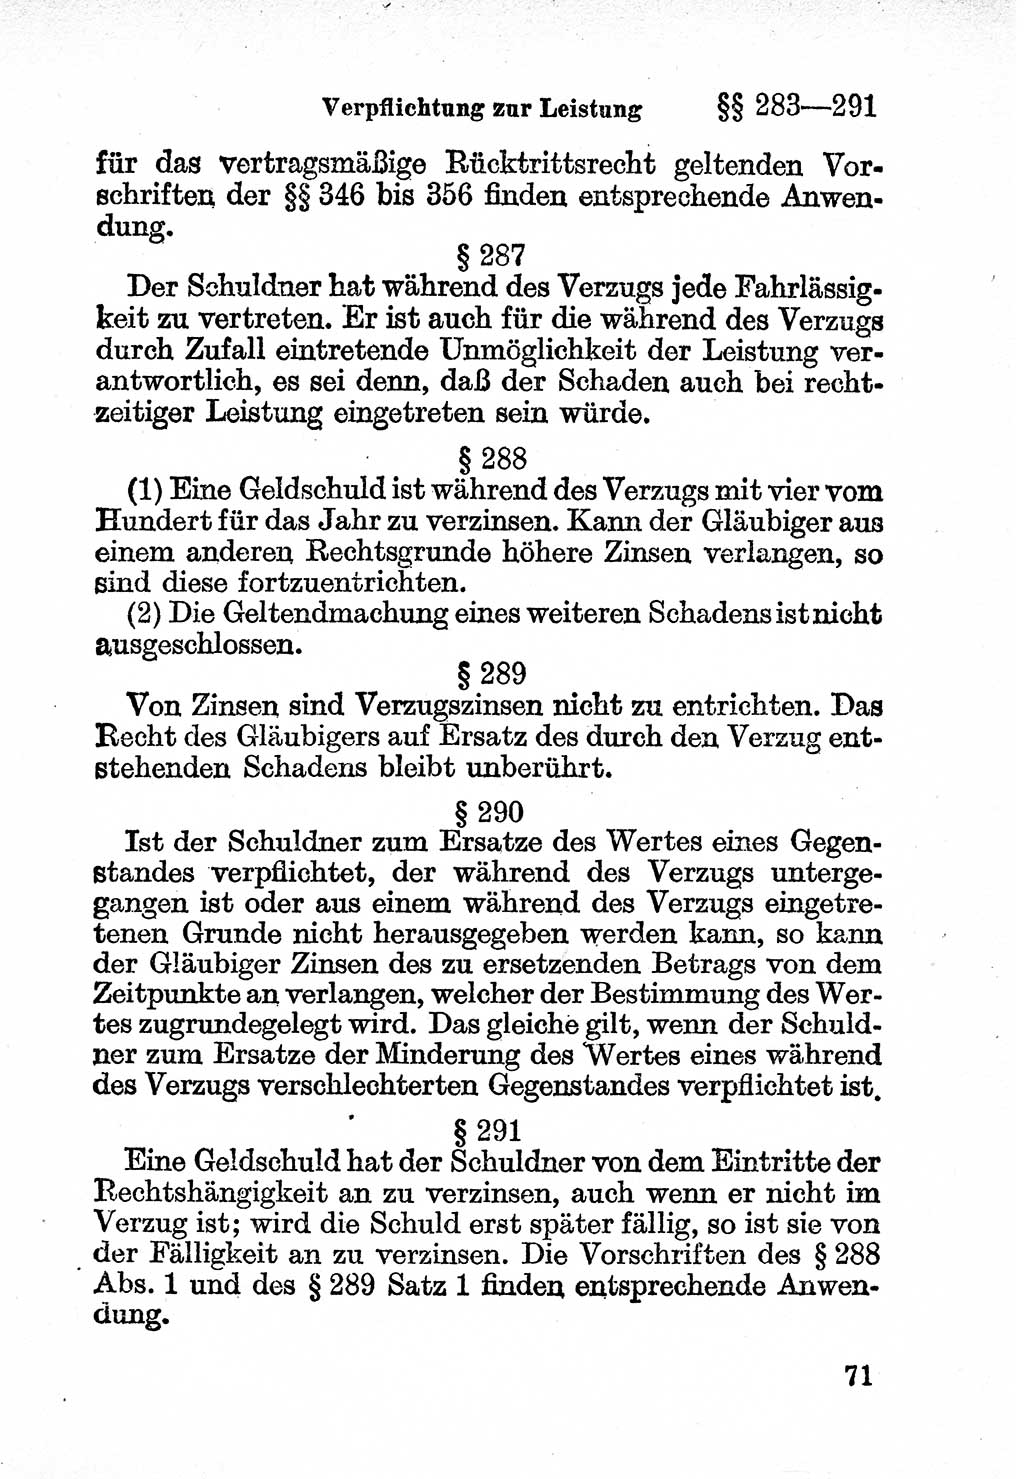 Bürgerliches Gesetzbuch (BGB) nebst wichtigen Nebengesetzen [Deutsche Demokratische Republik (DDR)] 1956, Seite 71 (BGB Nebenges. DDR 1956, S. 71)